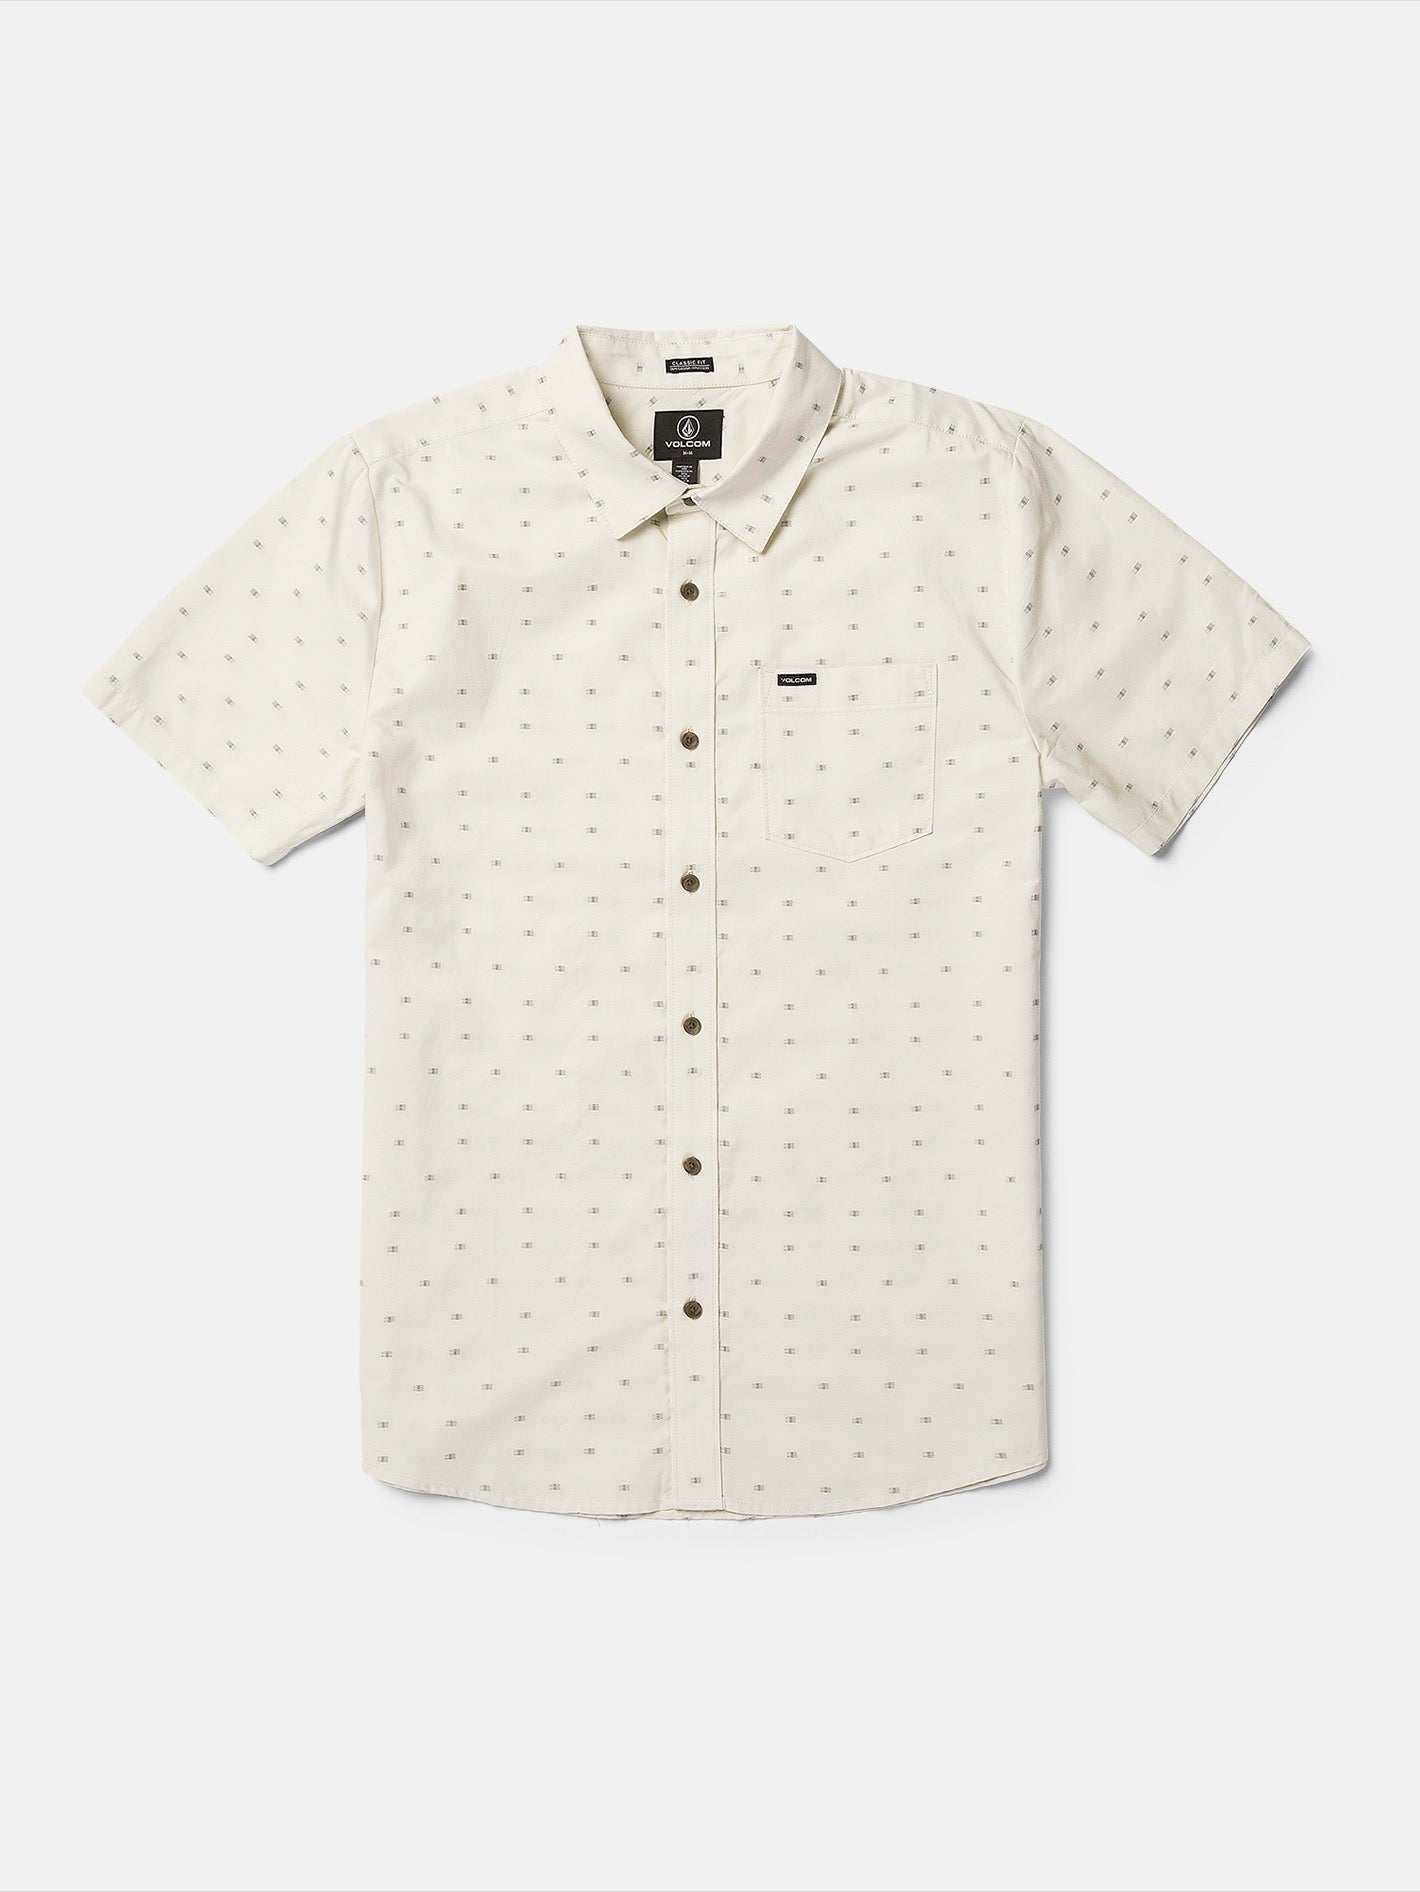 50 pcs/lot 11 mm Pure white button shirt 4 holes garment round buttons